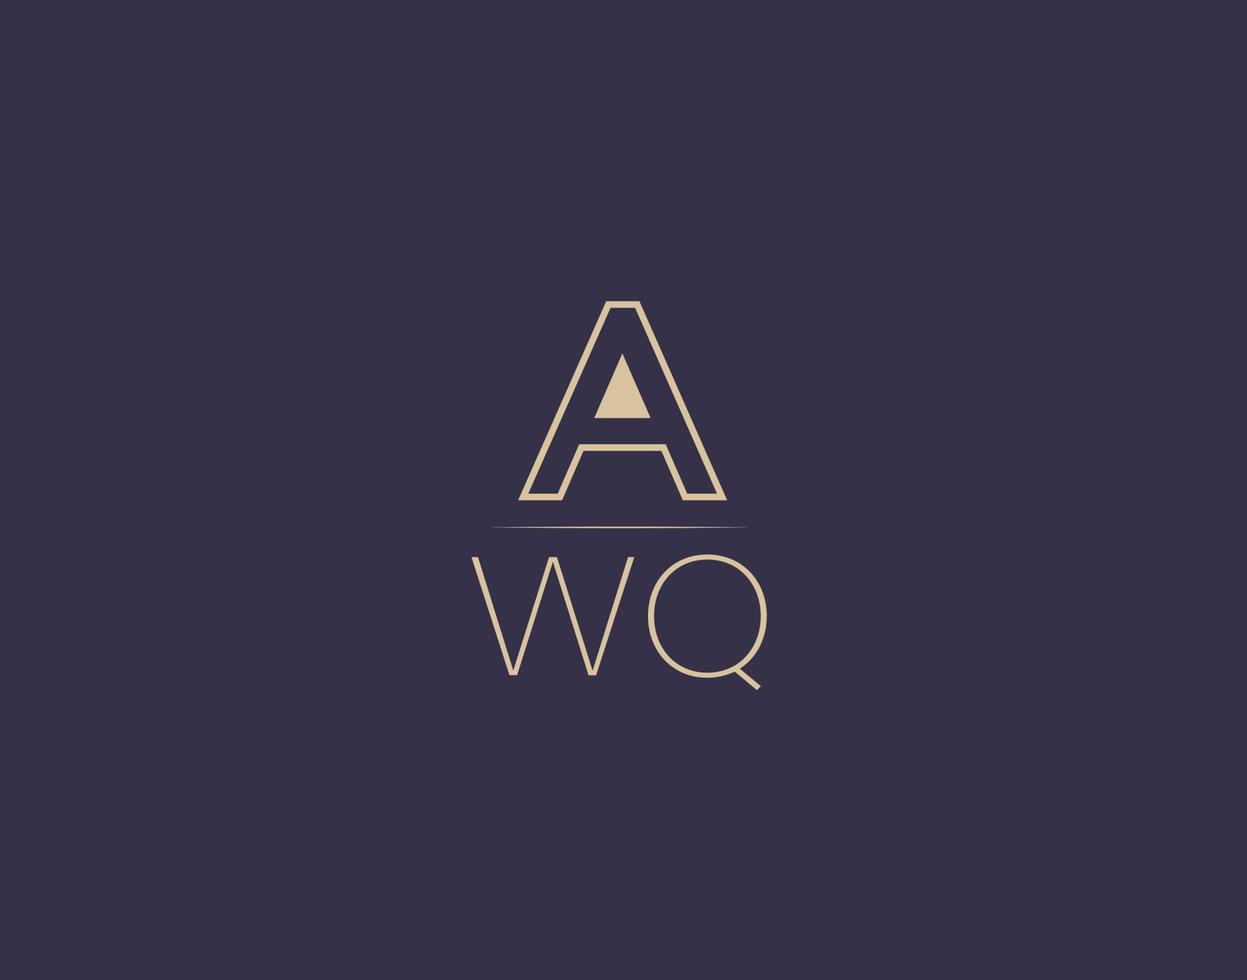 awq lettera logo design moderno minimalista vettore immagini